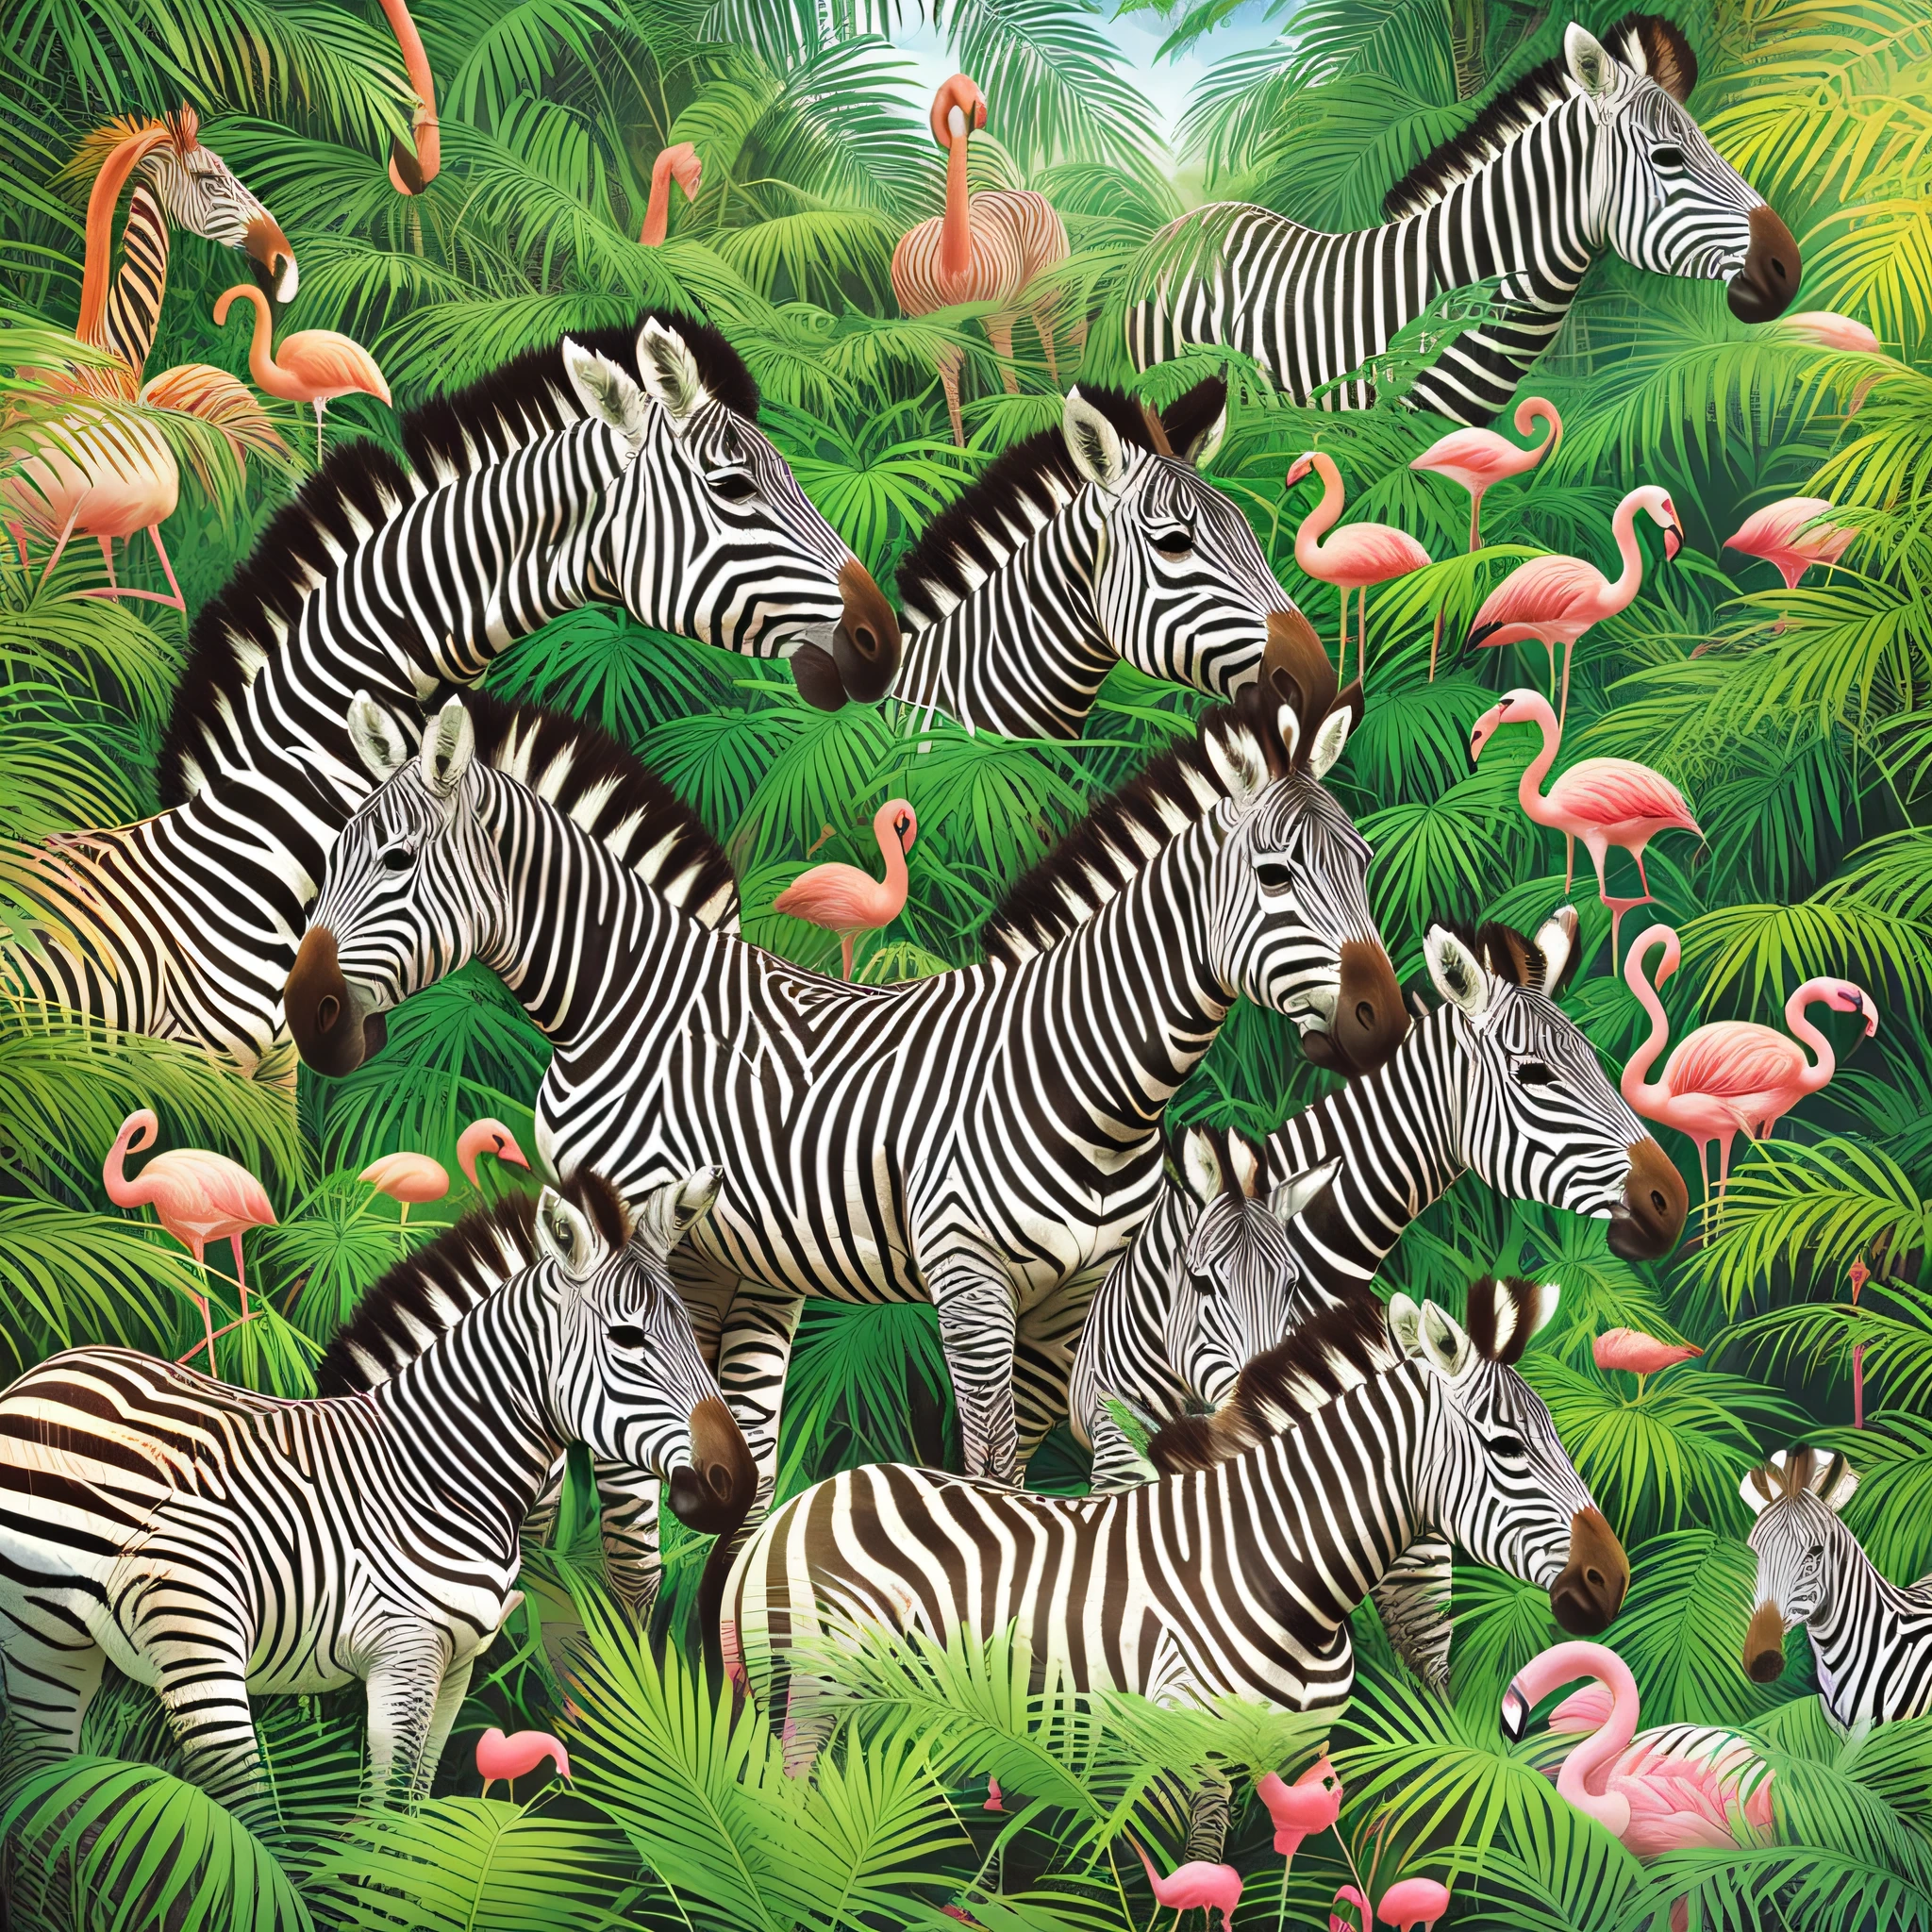 Зебраs and flamingos in a tropical jungle with palm trees, подробные  красивые животные, Иллюстрация дикой природы, красивая детализированная  иллюстрация, В тропическом лесу - SeaArt AI